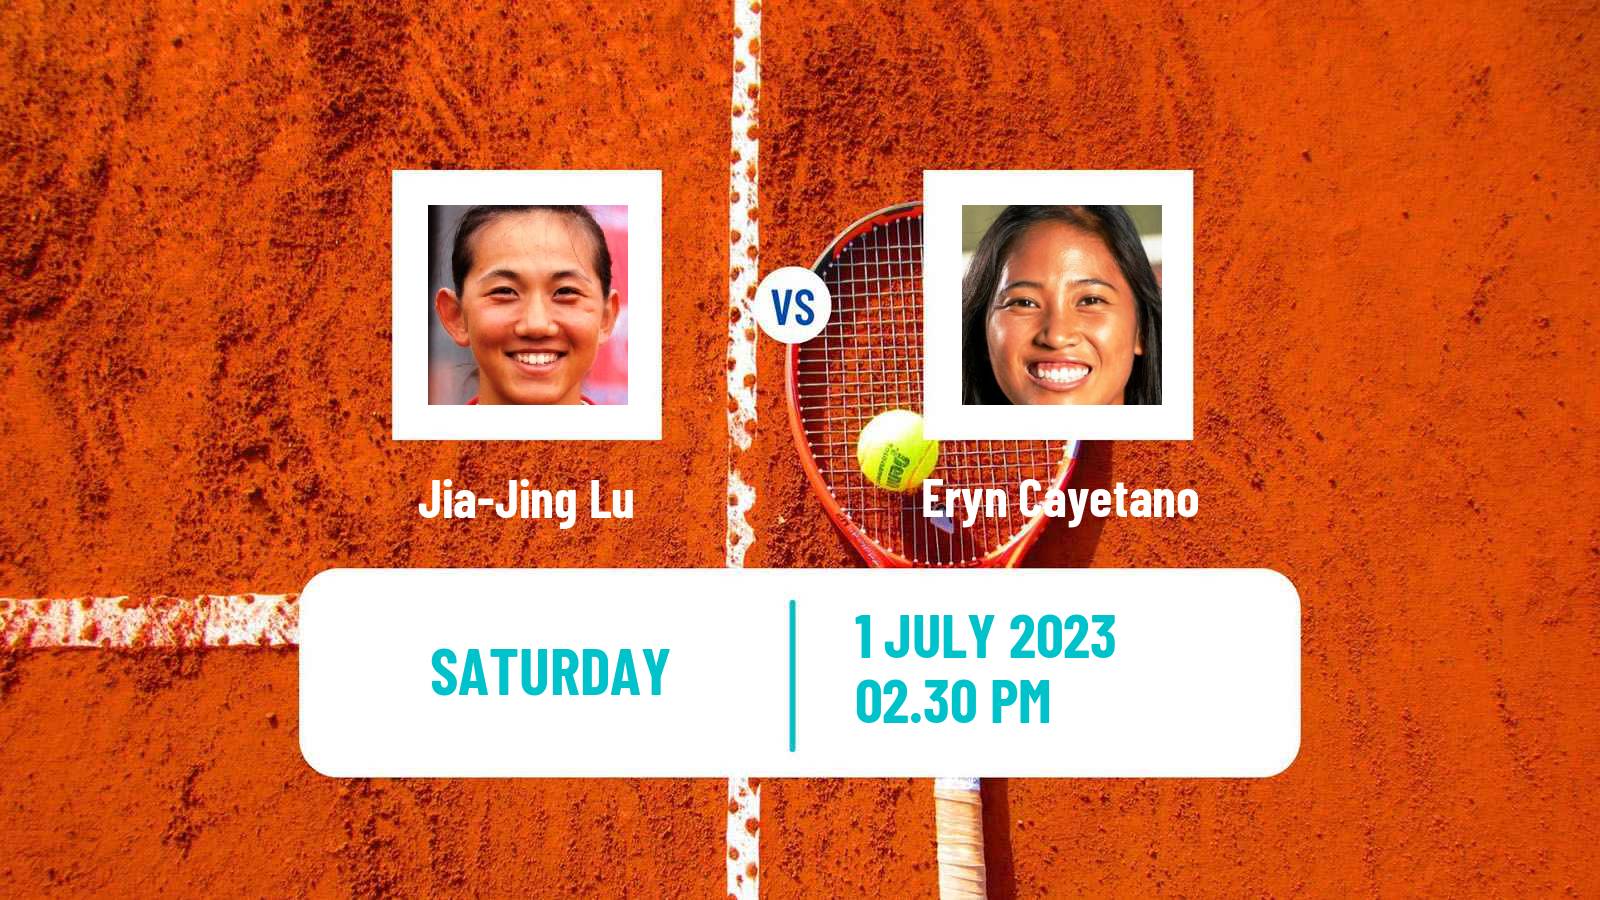 Tennis ITF W15 Irvine Ca Women Jia-Jing Lu - Eryn Cayetano